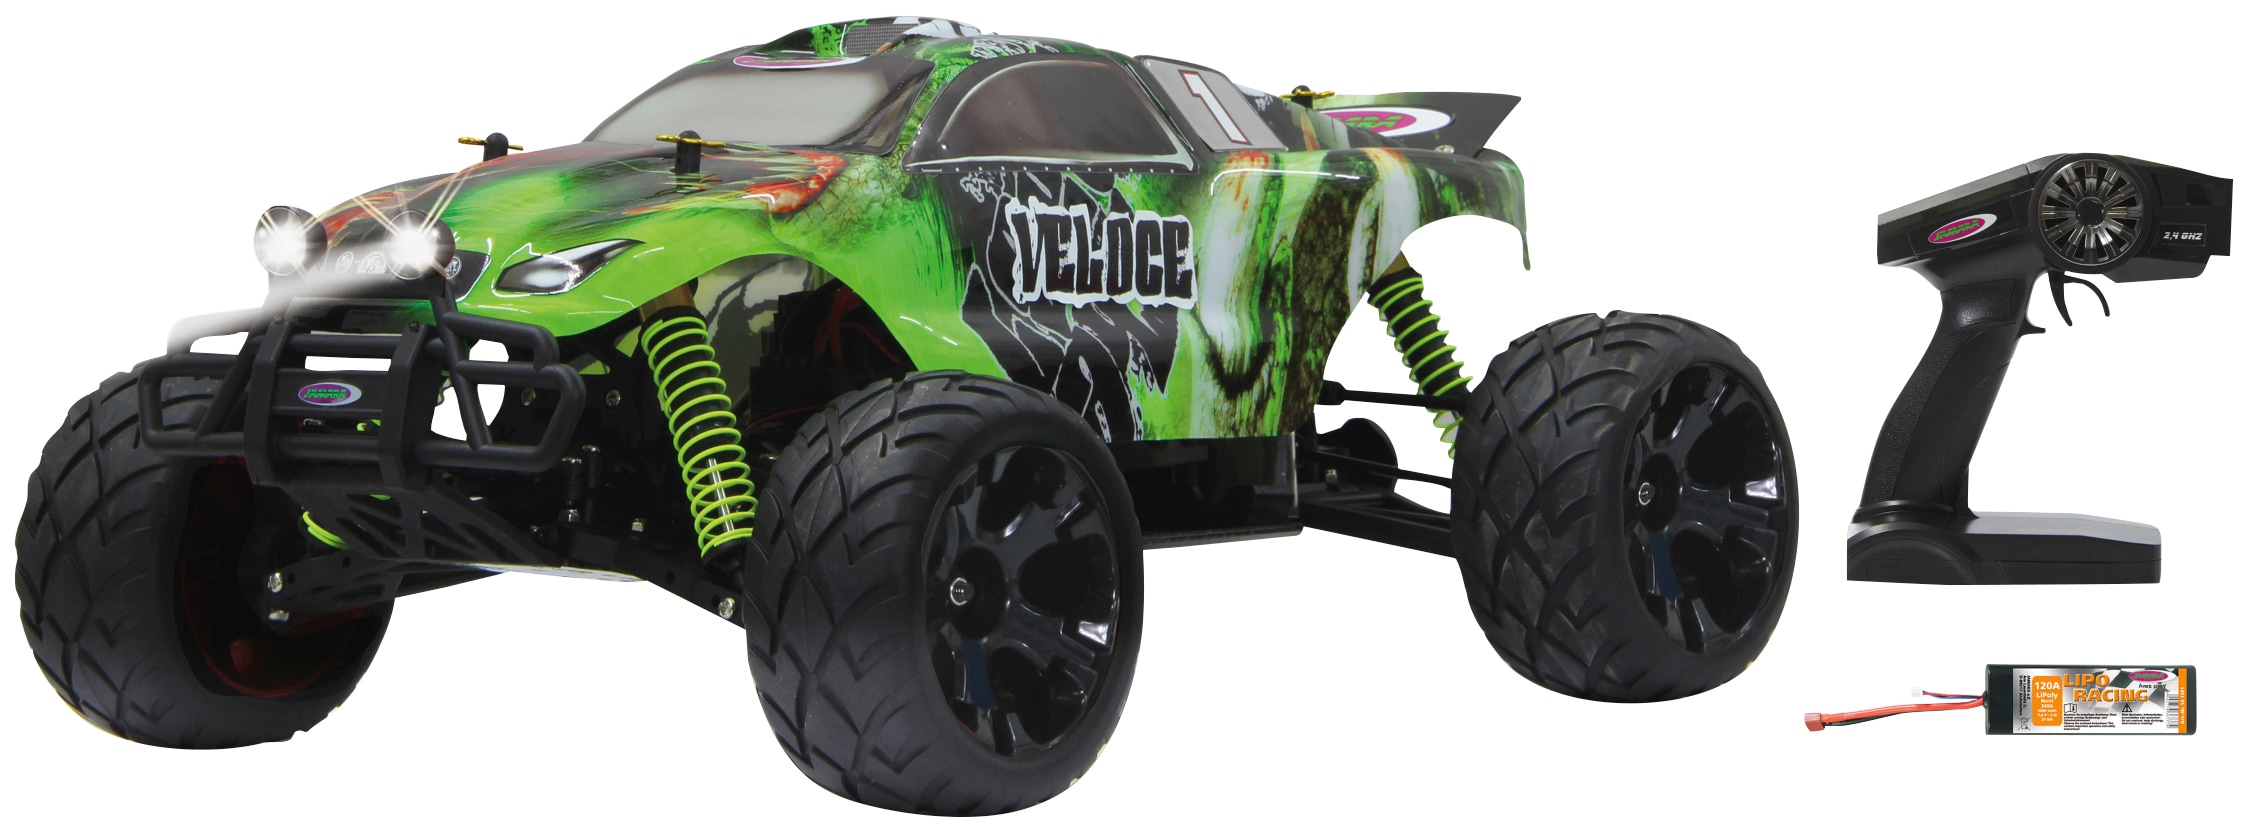 RC-Monstertruck »Veloce Monstertruck 4WD«, 1:10, 2,4 GHz, mit LED